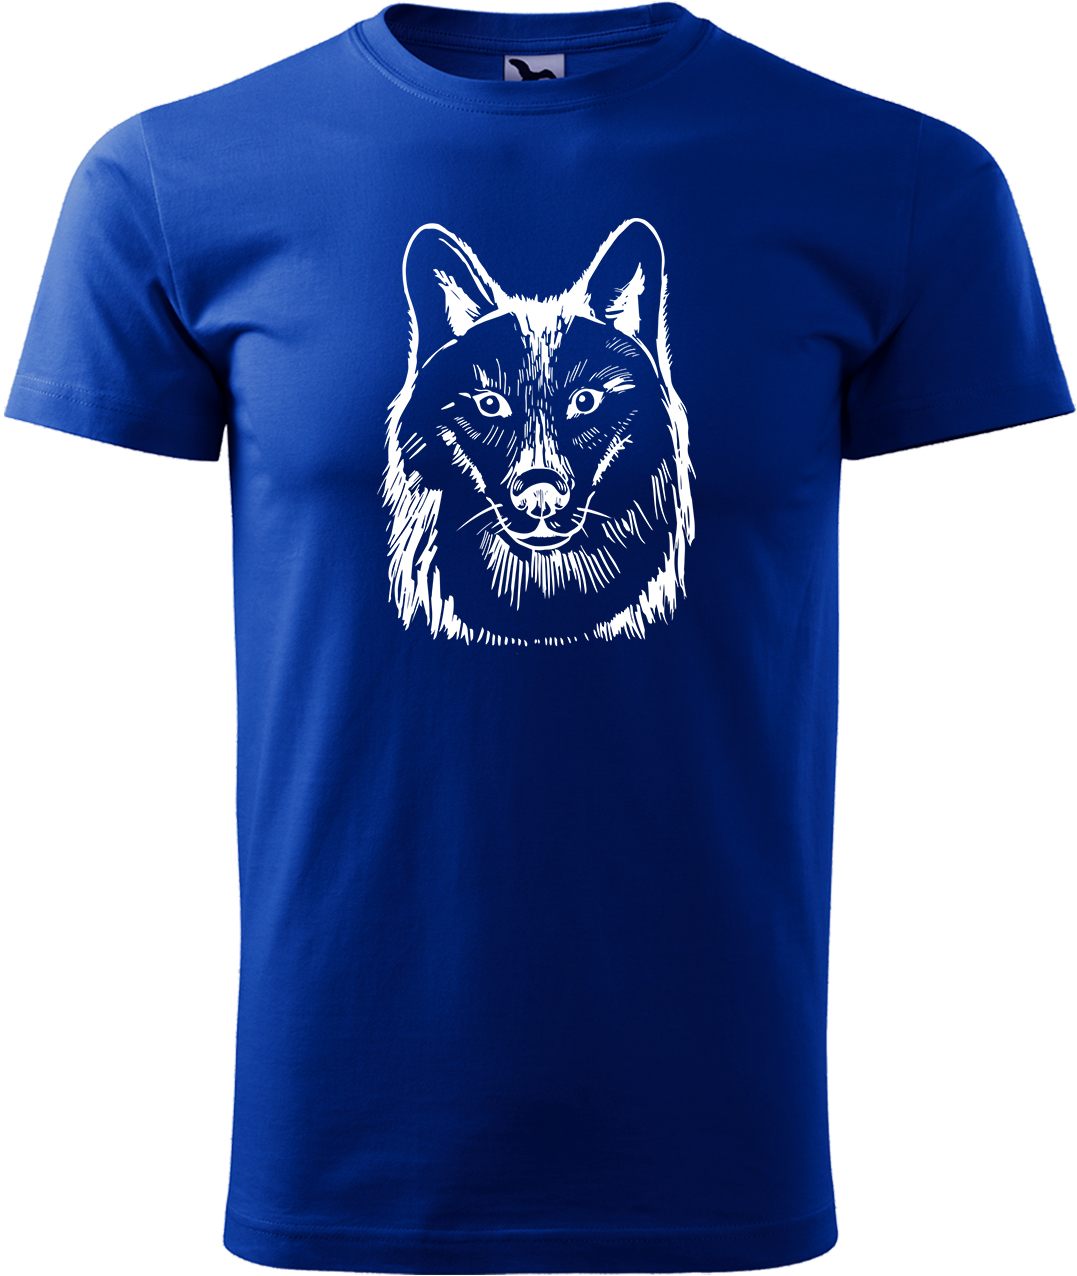 Pánské tričko s vlkem - Kresba vlka Velikost: 3XL, Barva: Královská modrá (05), Střih: pánský